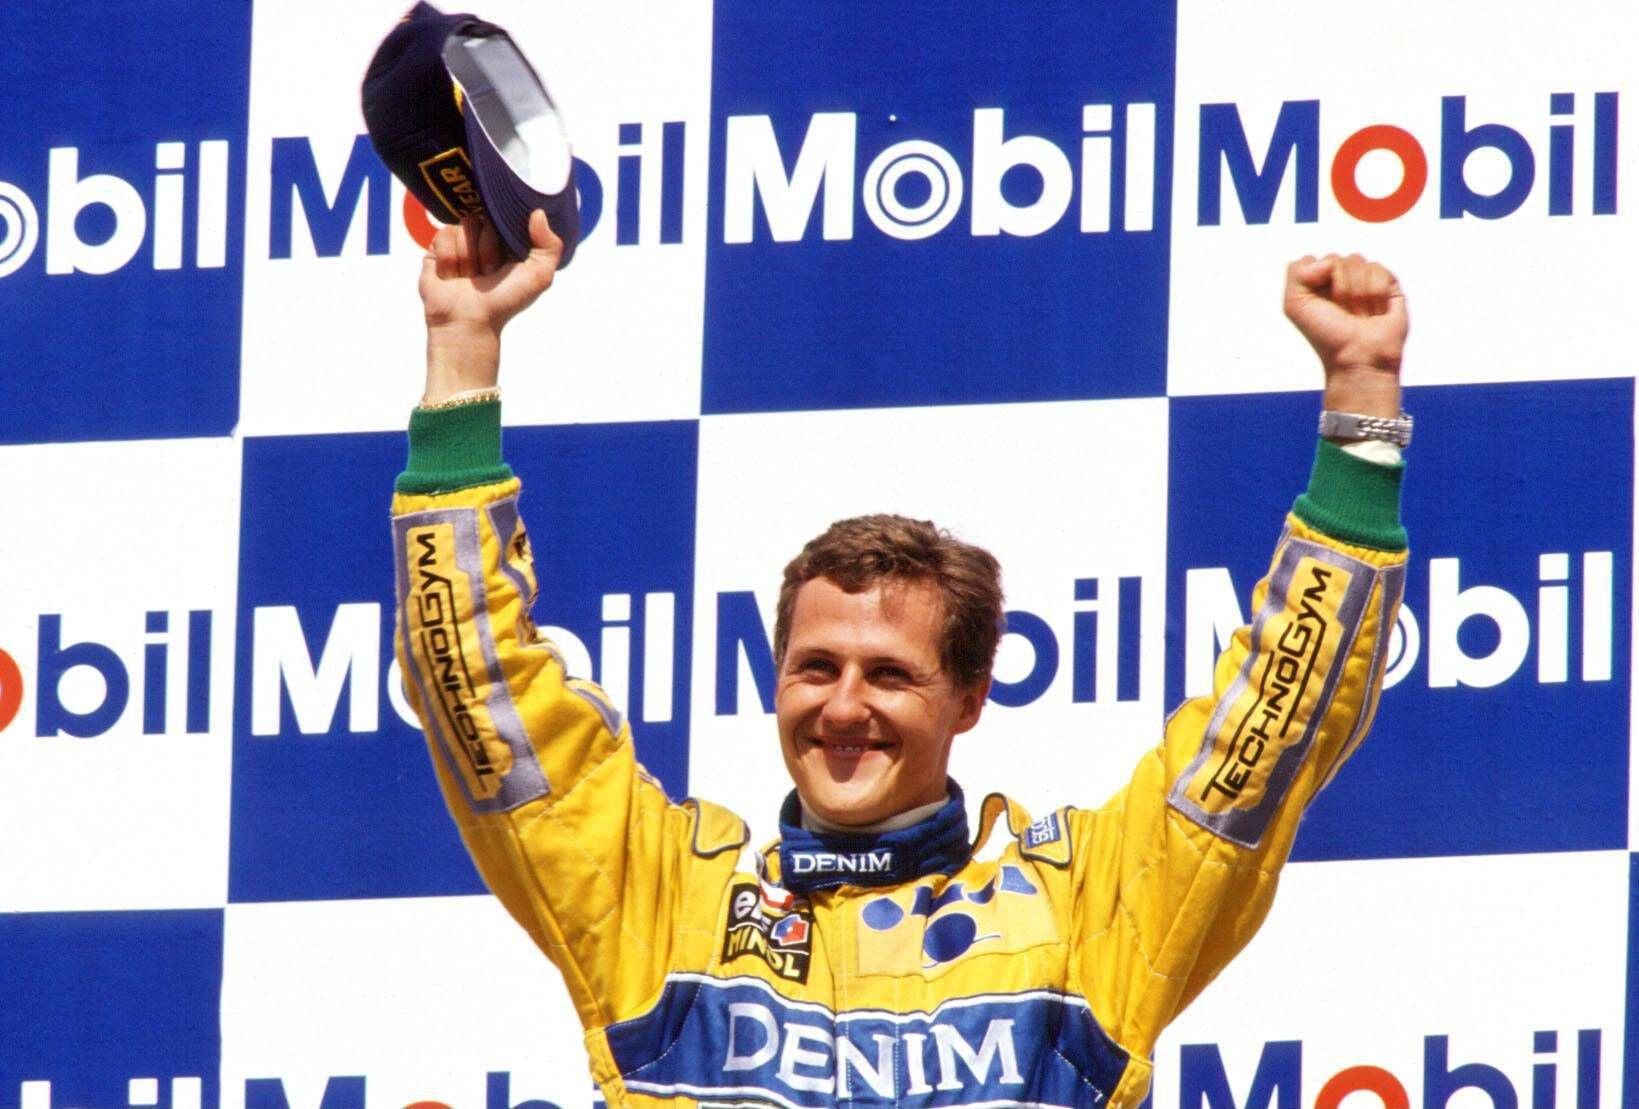 Der ehemalige deutsche Formel-1-Fahrer Michael Schumacher jubelte 1994 bei einer Siegerehrung